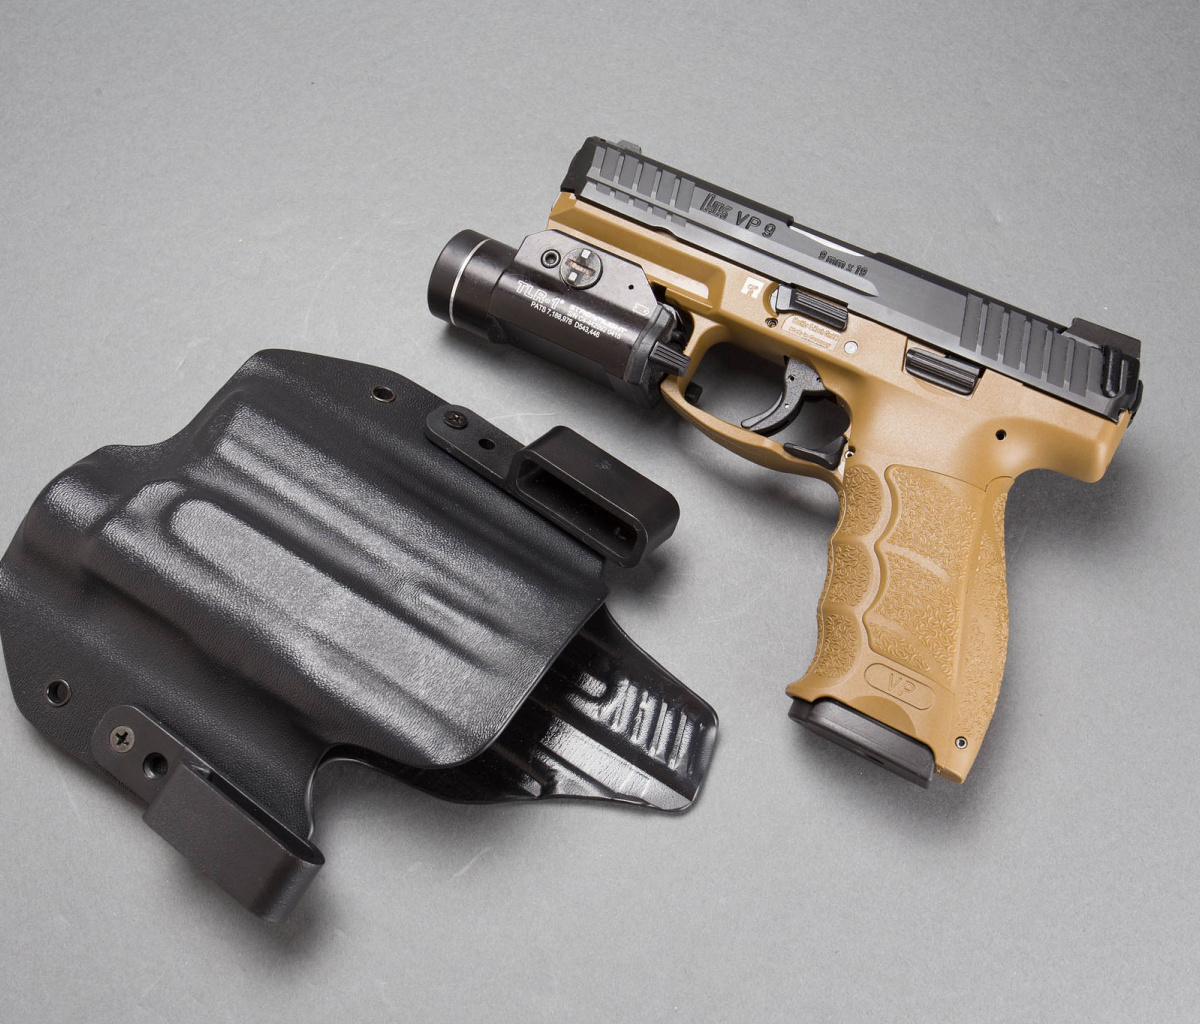 Pistols Heckler & Koch 9mm wallpaper 1200x1024